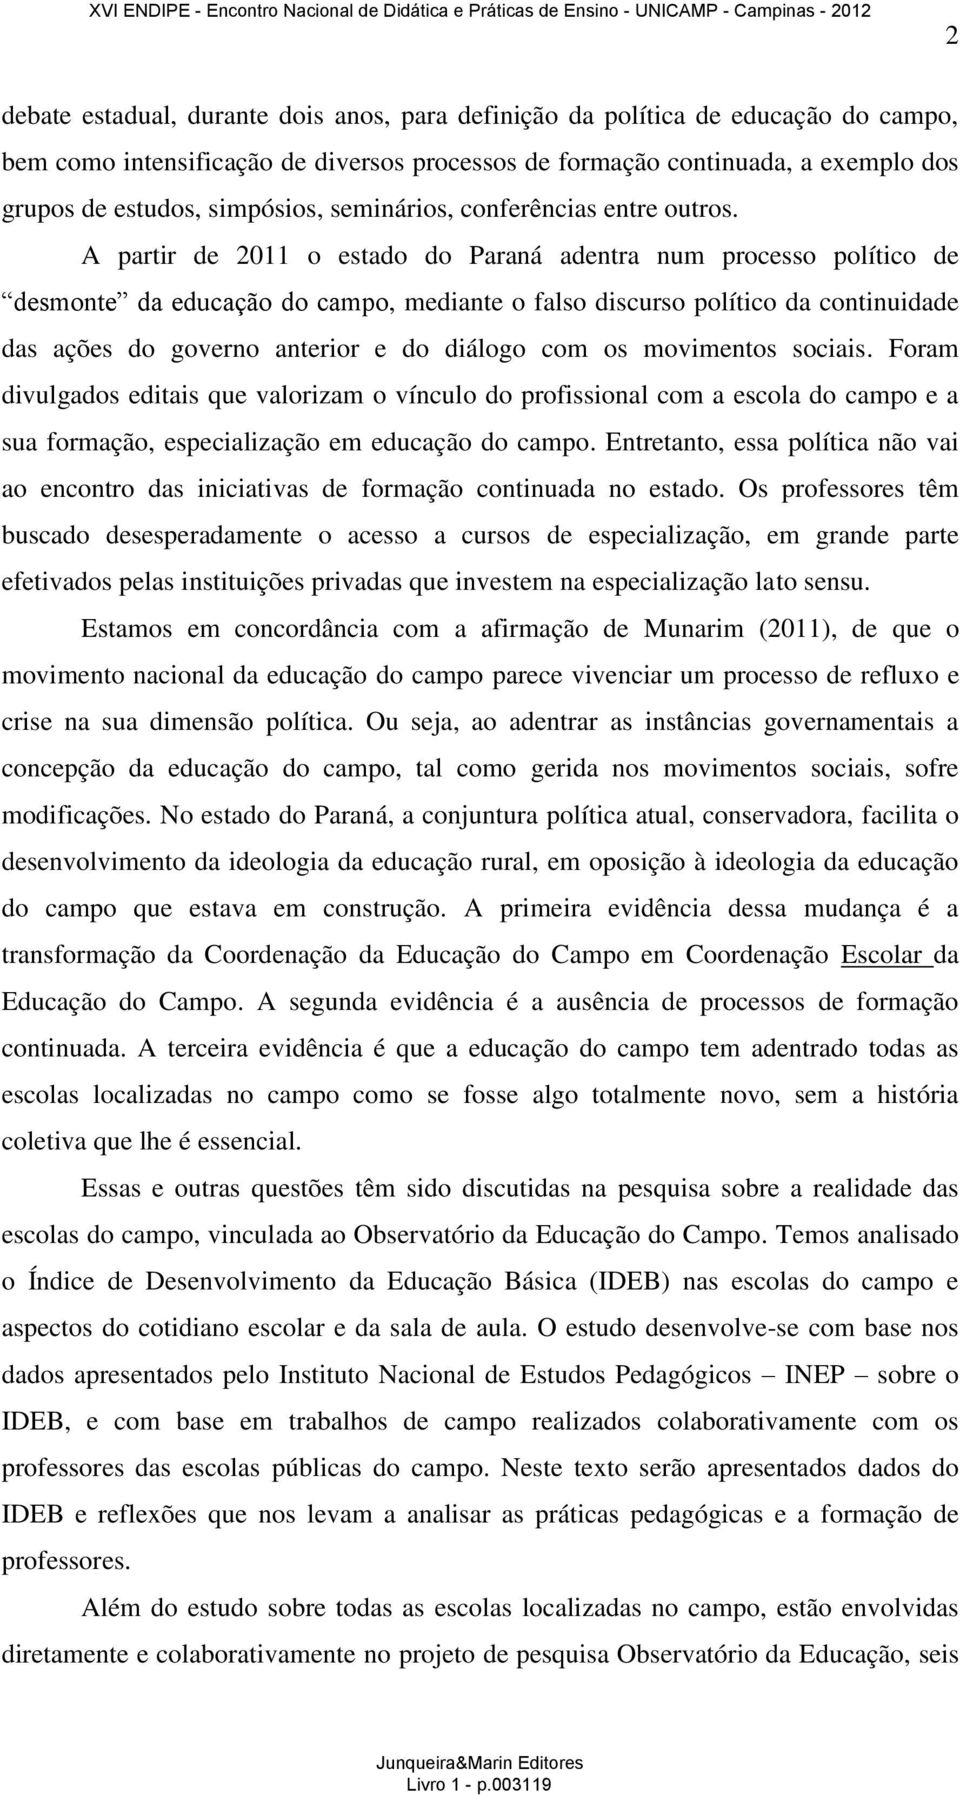 A partir de 2011 o estado do Paraná adentra num processo político de desmonte da educação do campo, mediante o falso discurso político da continuidade das ações do governo anterior e do diálogo com